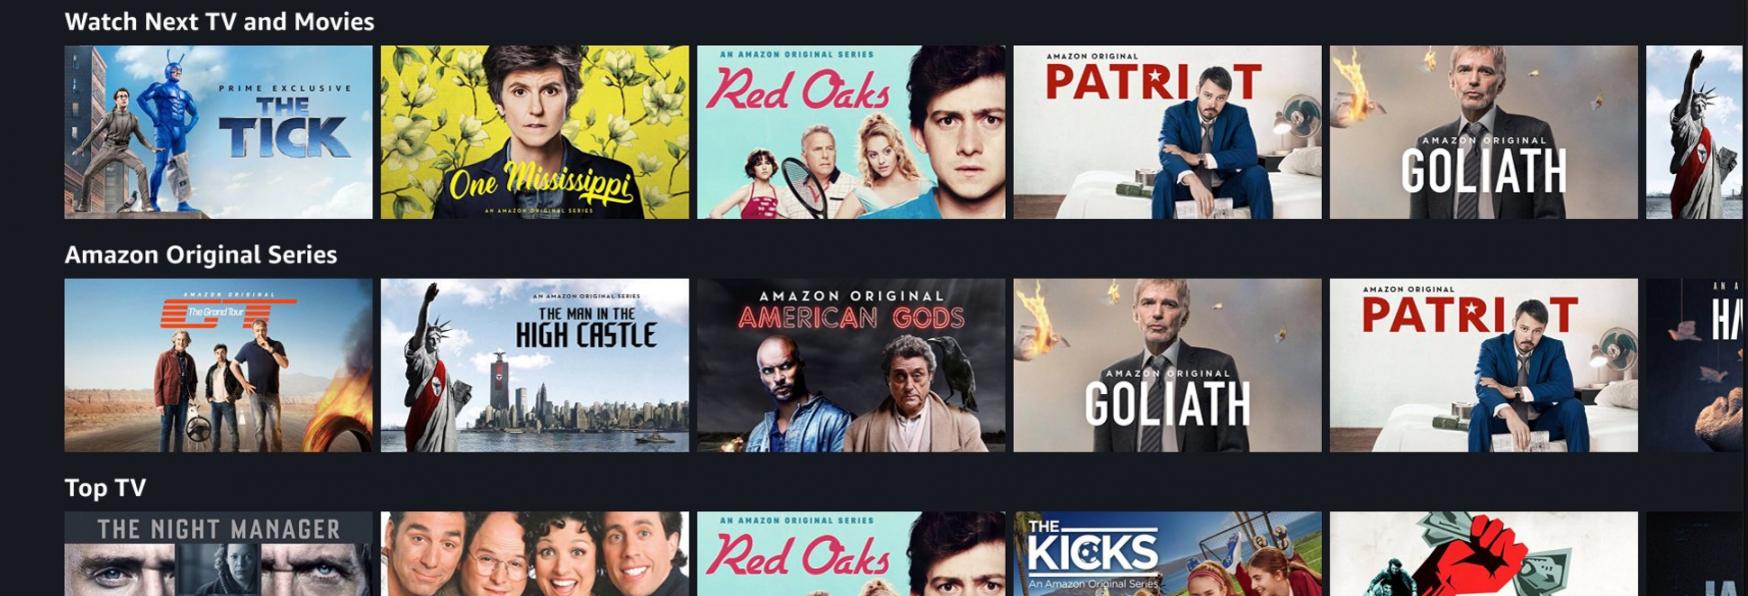 Amazon Prime Video: tutte le Serie TV disponibili in Streaming da Febbraio 2020